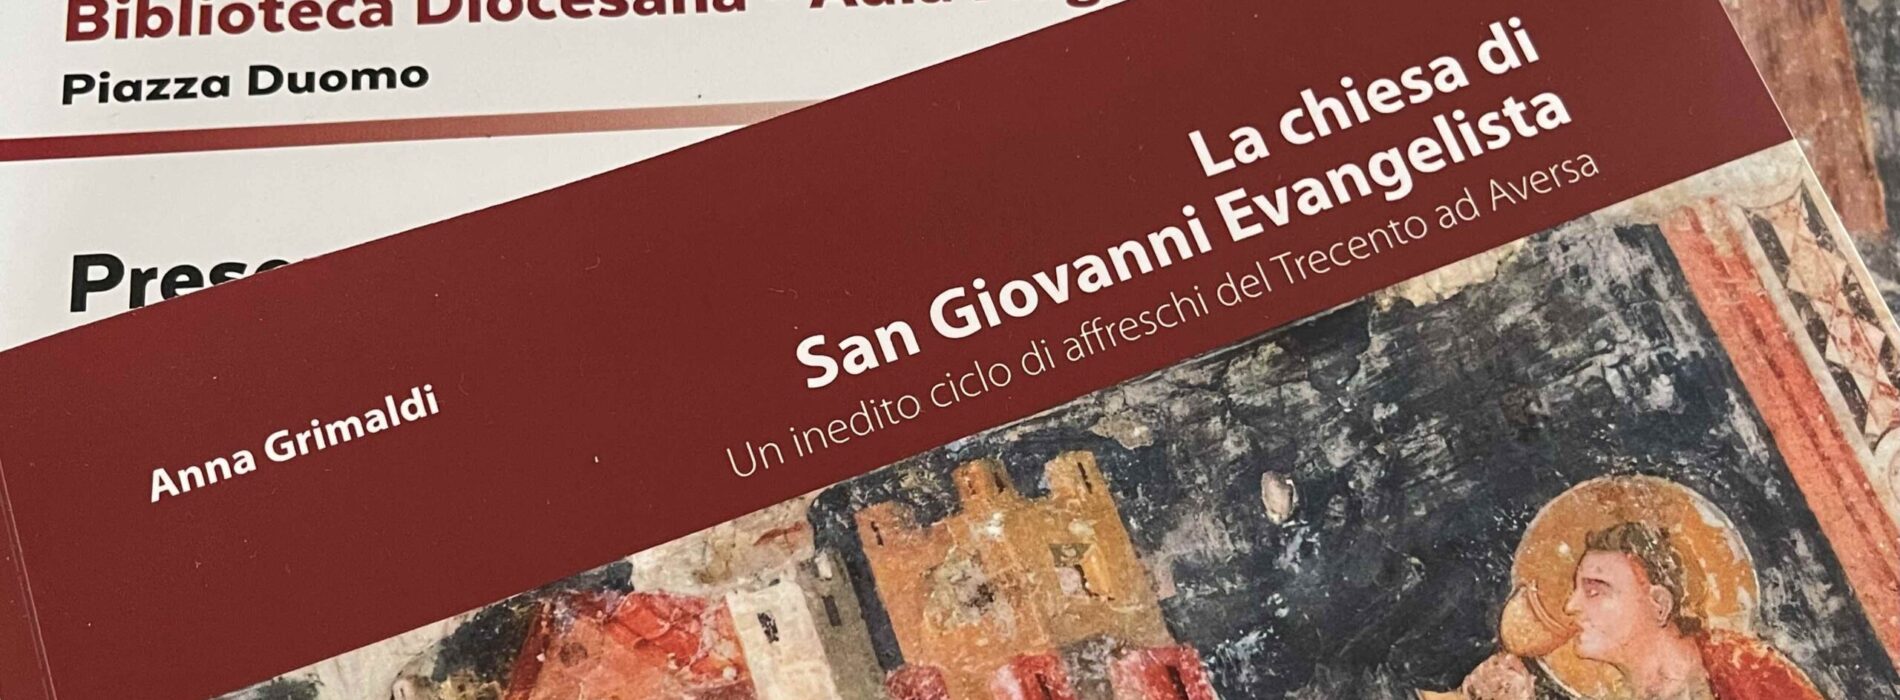 Biblioteca Diocesana Caserta, il nuovo libro di Anna Grimaldi